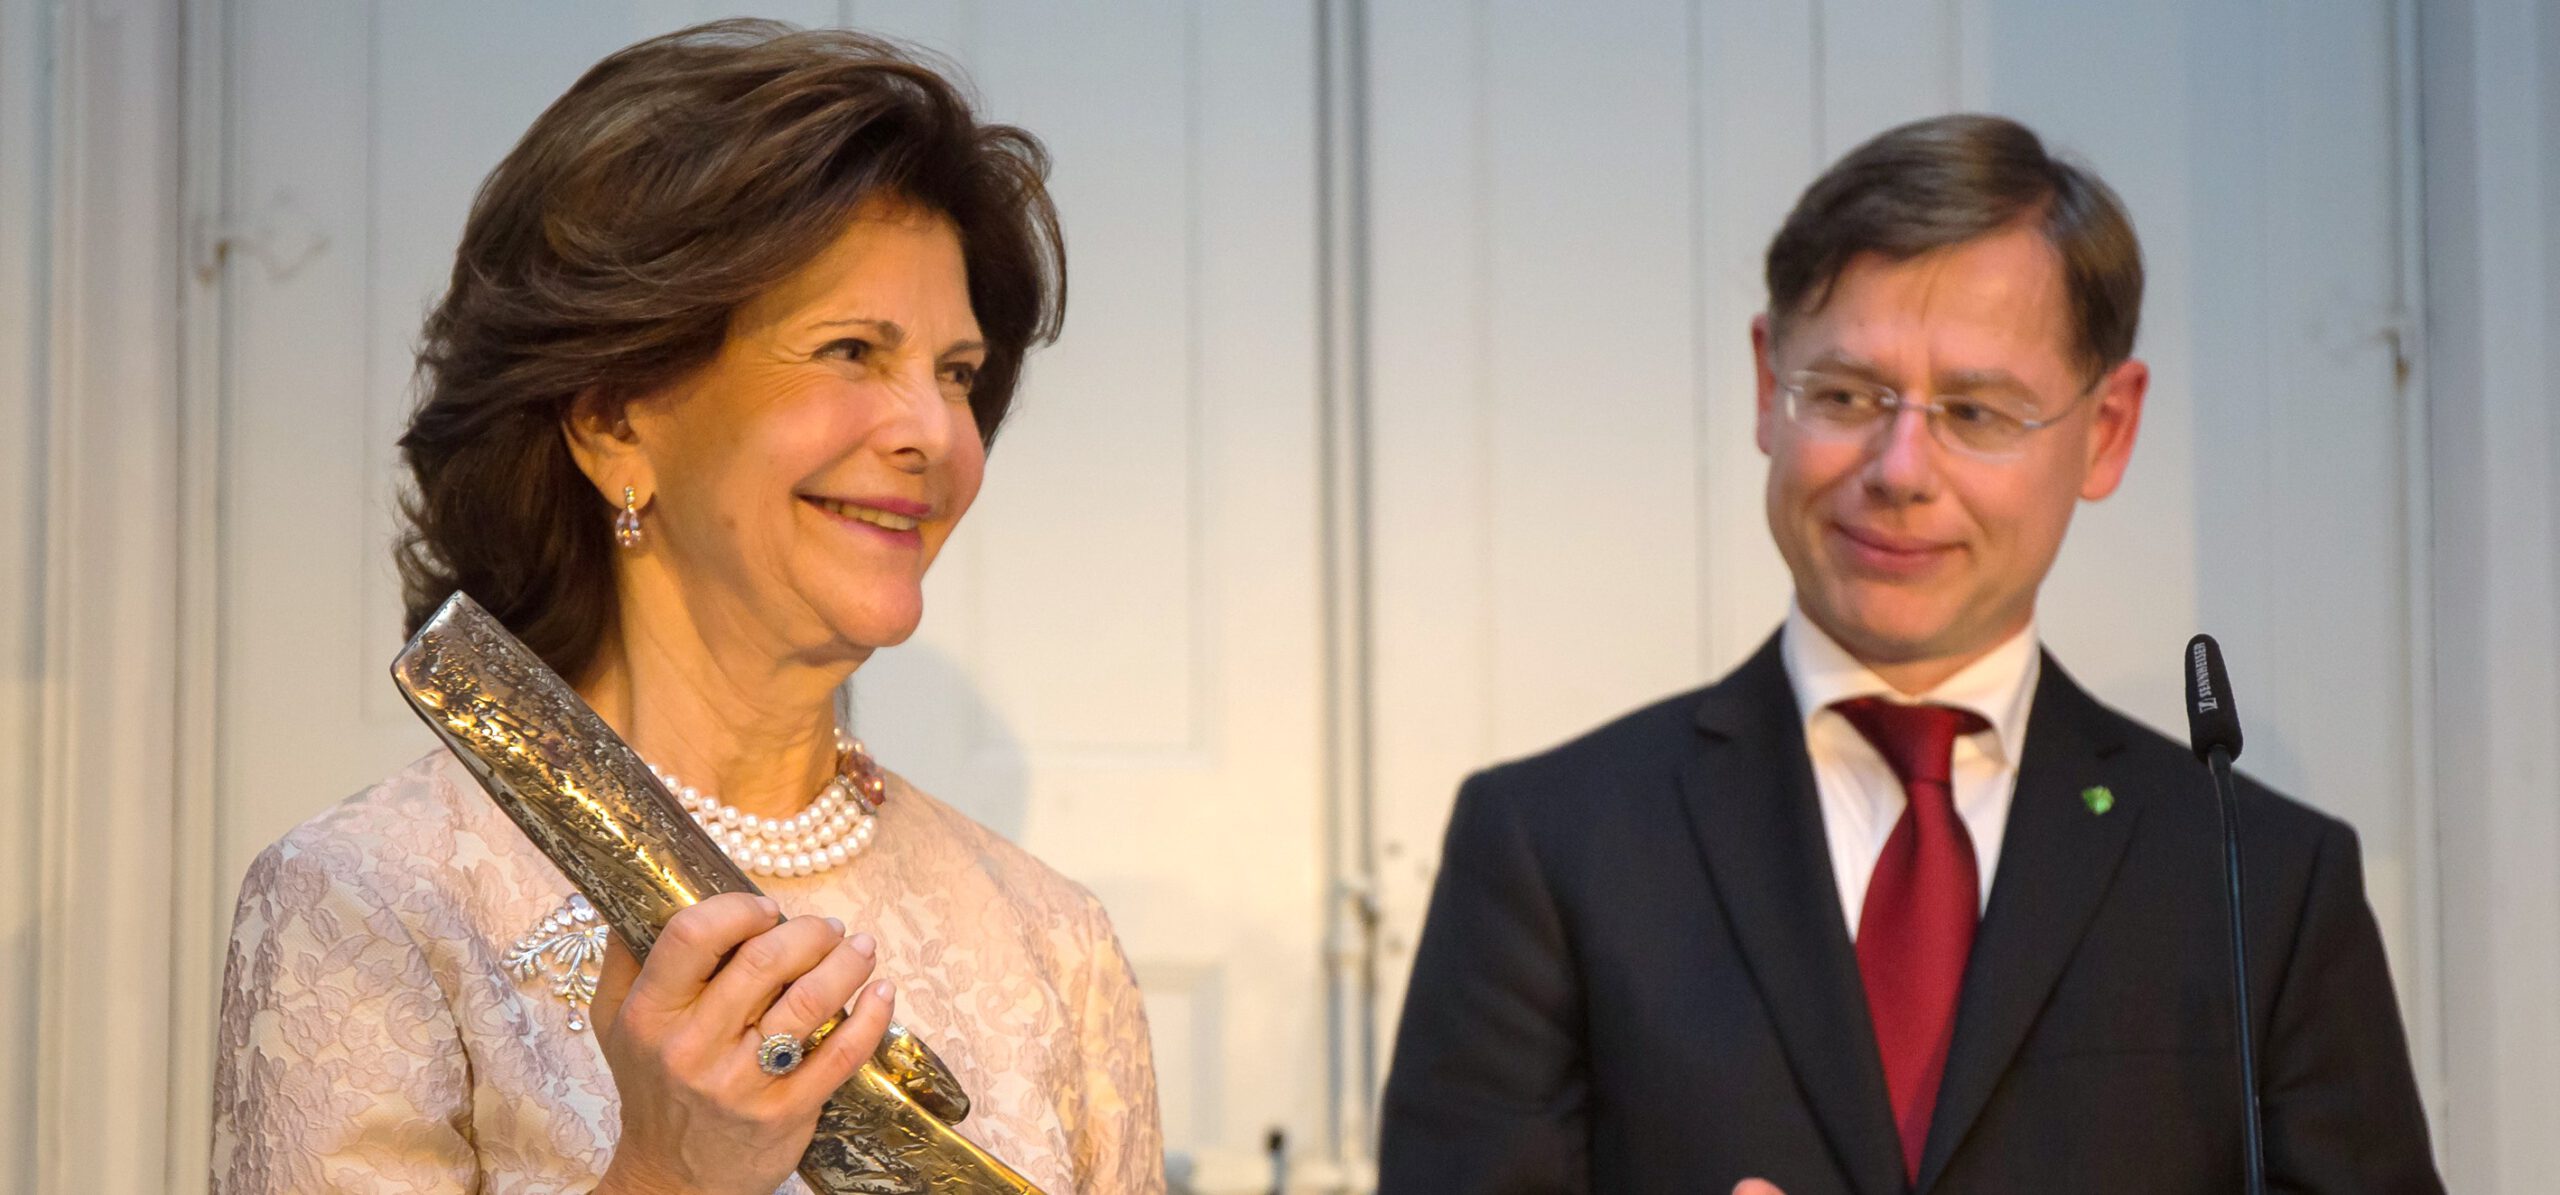 Pro.movere 2016 - Preisverleihung mit Ihrer Majestät Königin Silvia von Schweden